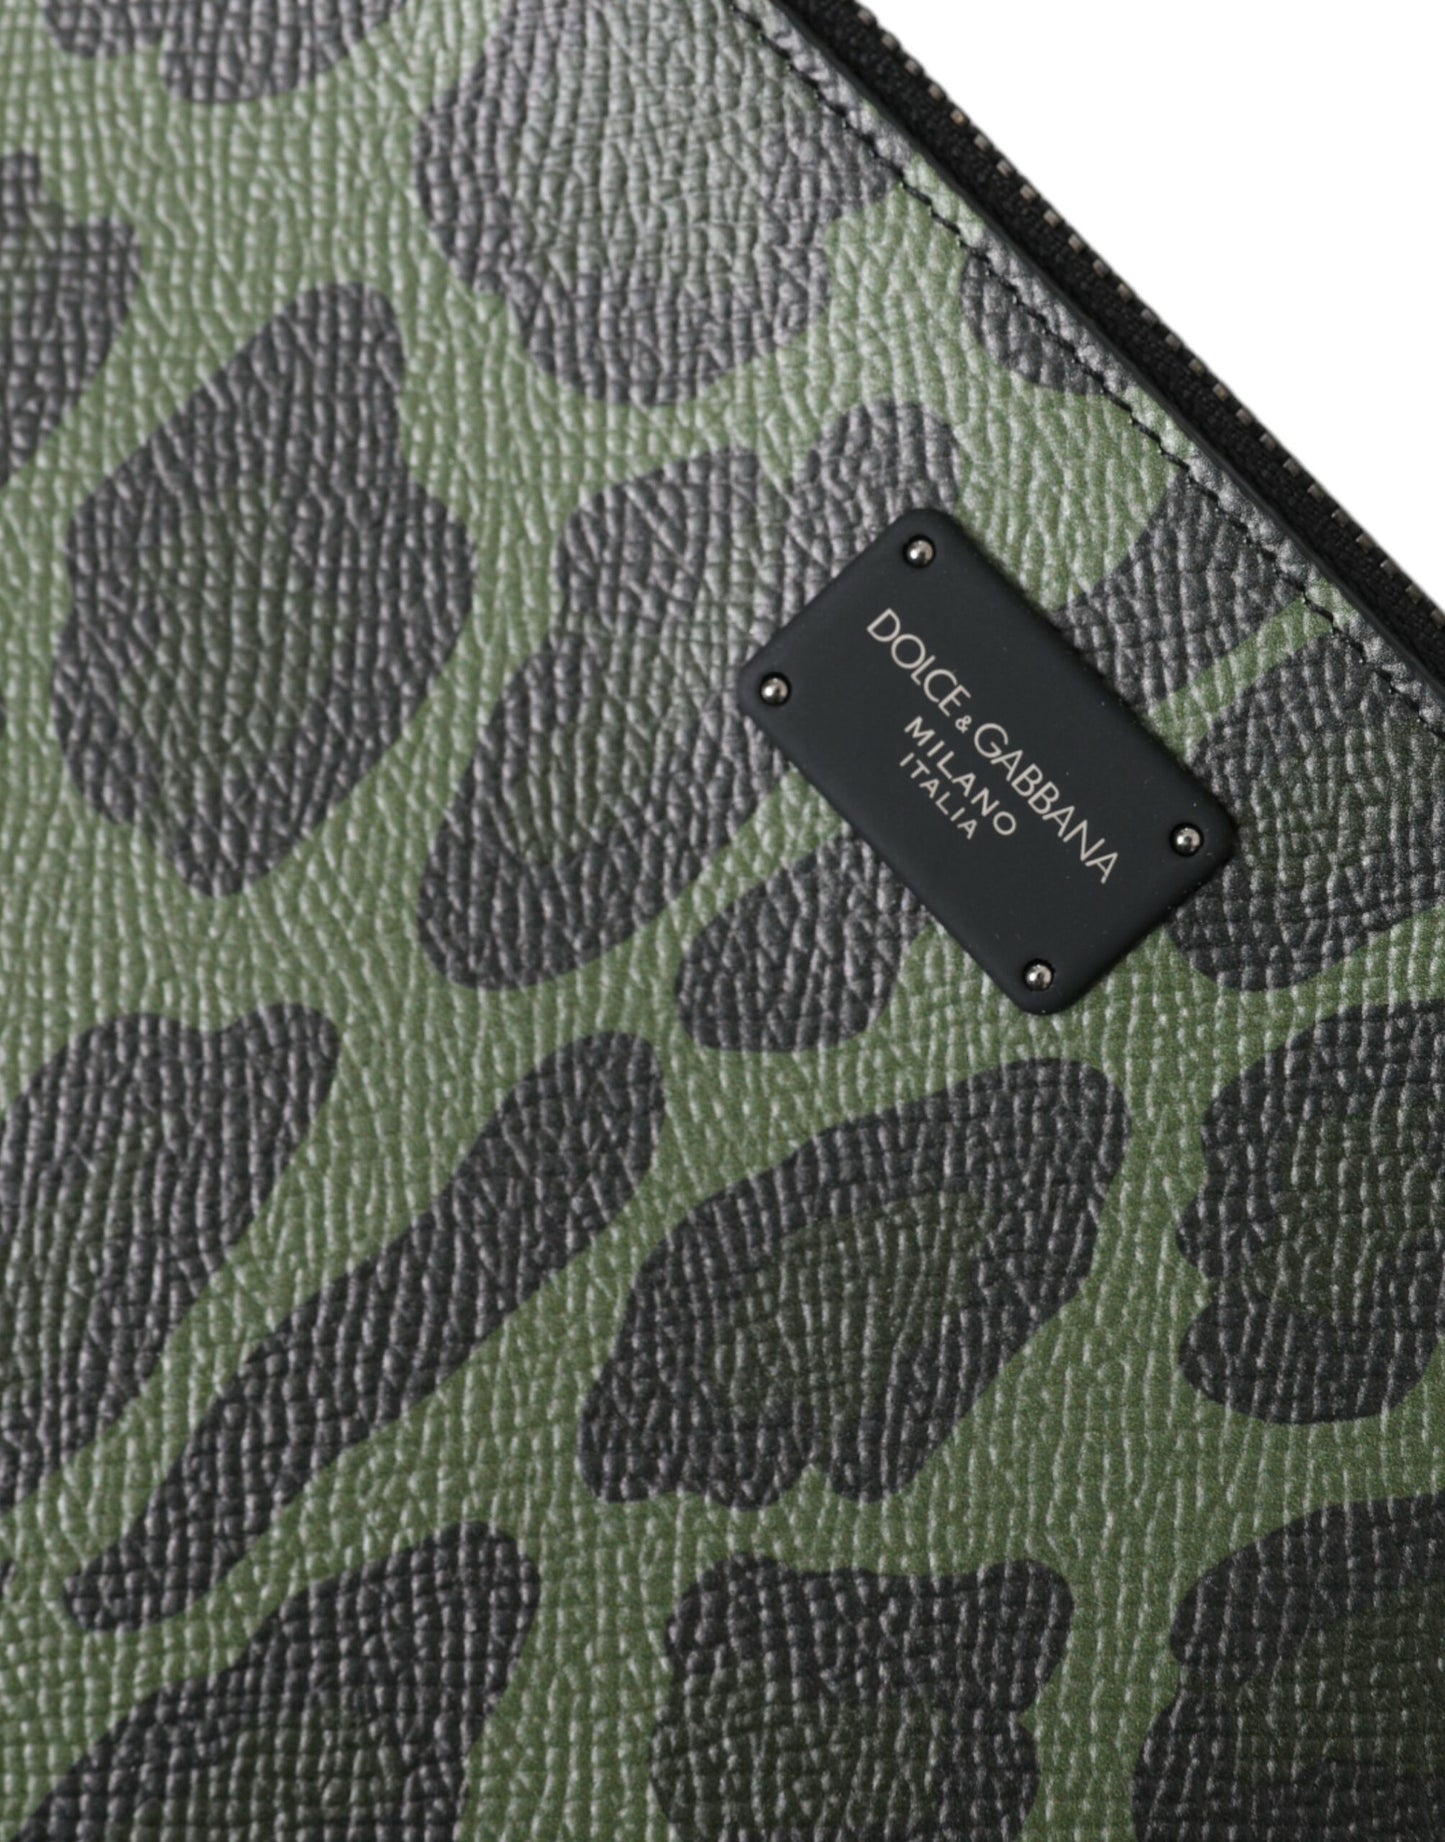 Elegant Green Leopard Print Calf Leather Clutch